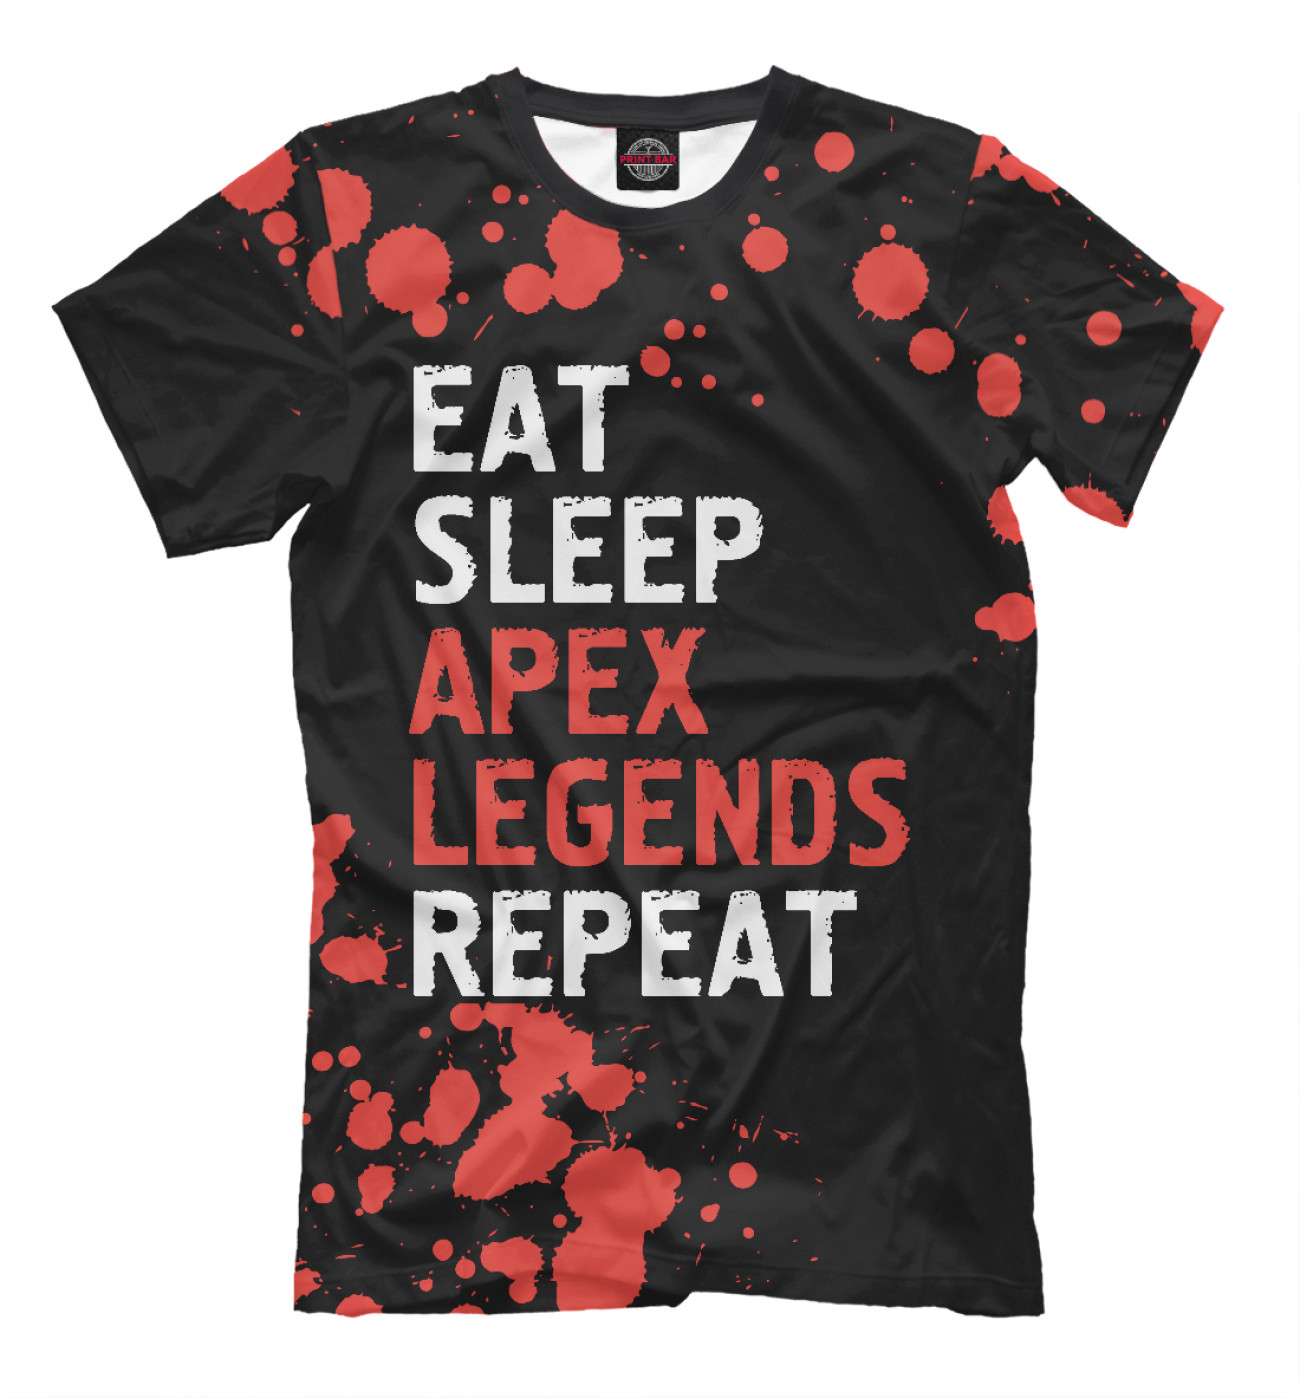 Мужская Футболка Eat Sleep Apex Legends Repeat, артикул: APX-366384-fut-2